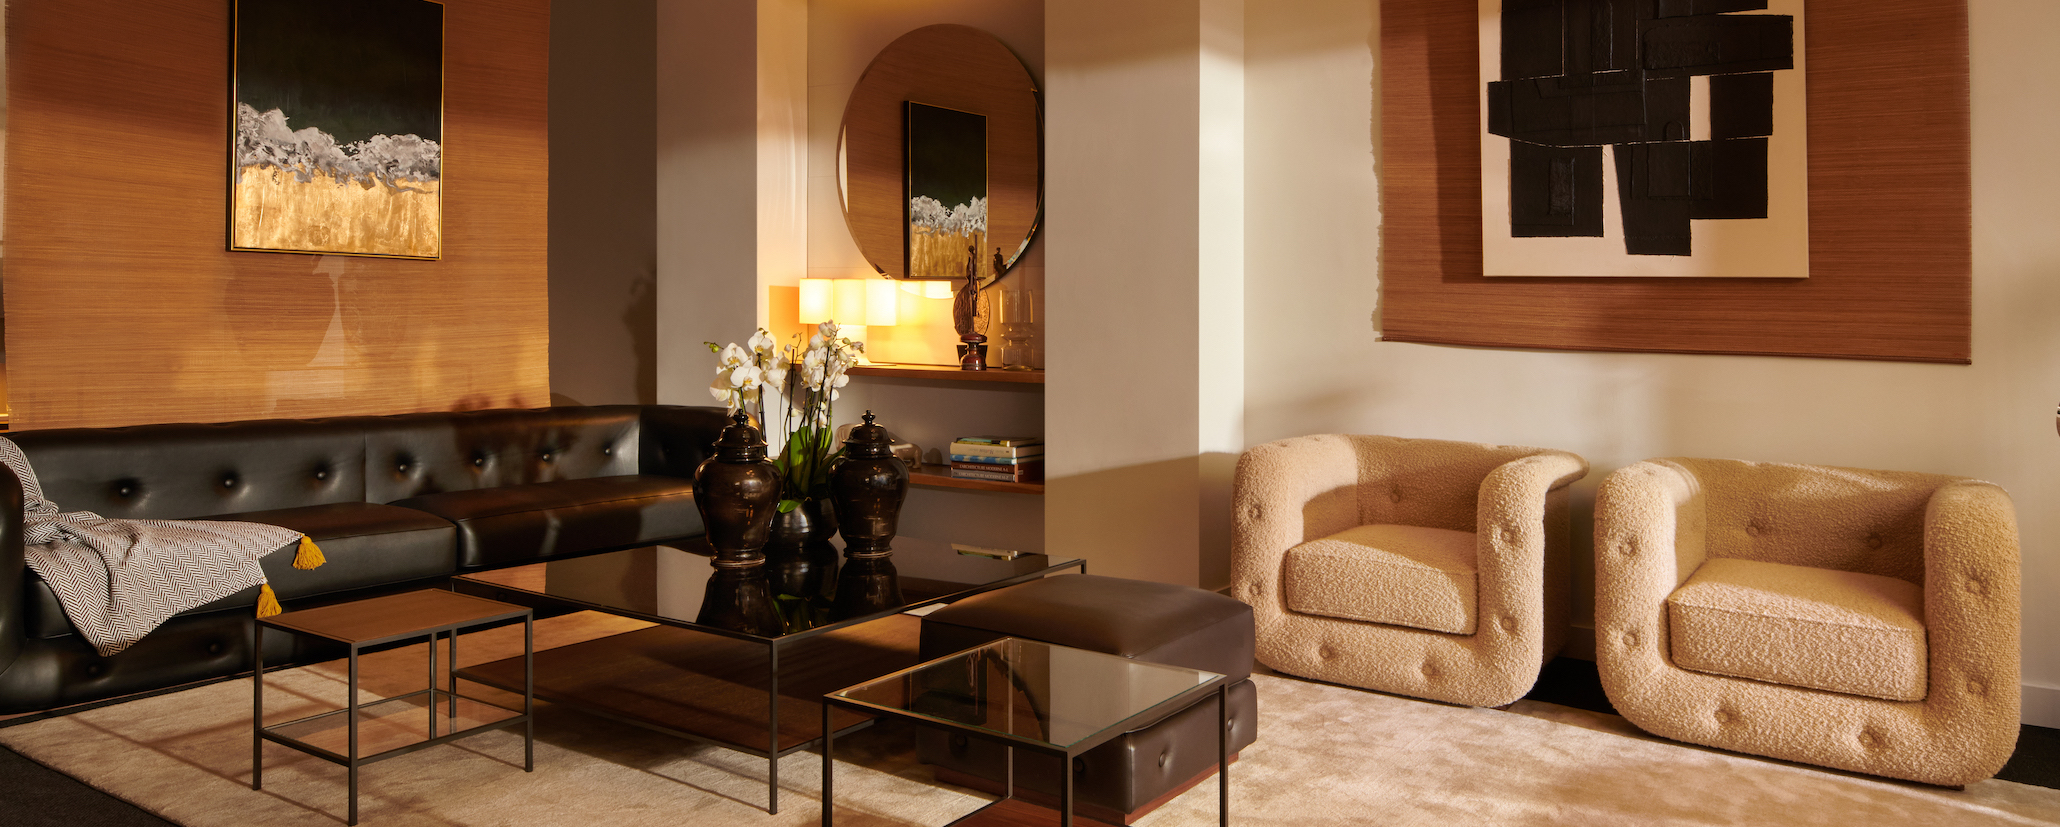 canapé design haut de gamme cuir pleine fleur noir et fauteuil luxe tissu bouclette beige | Duvivier Canapés Serge